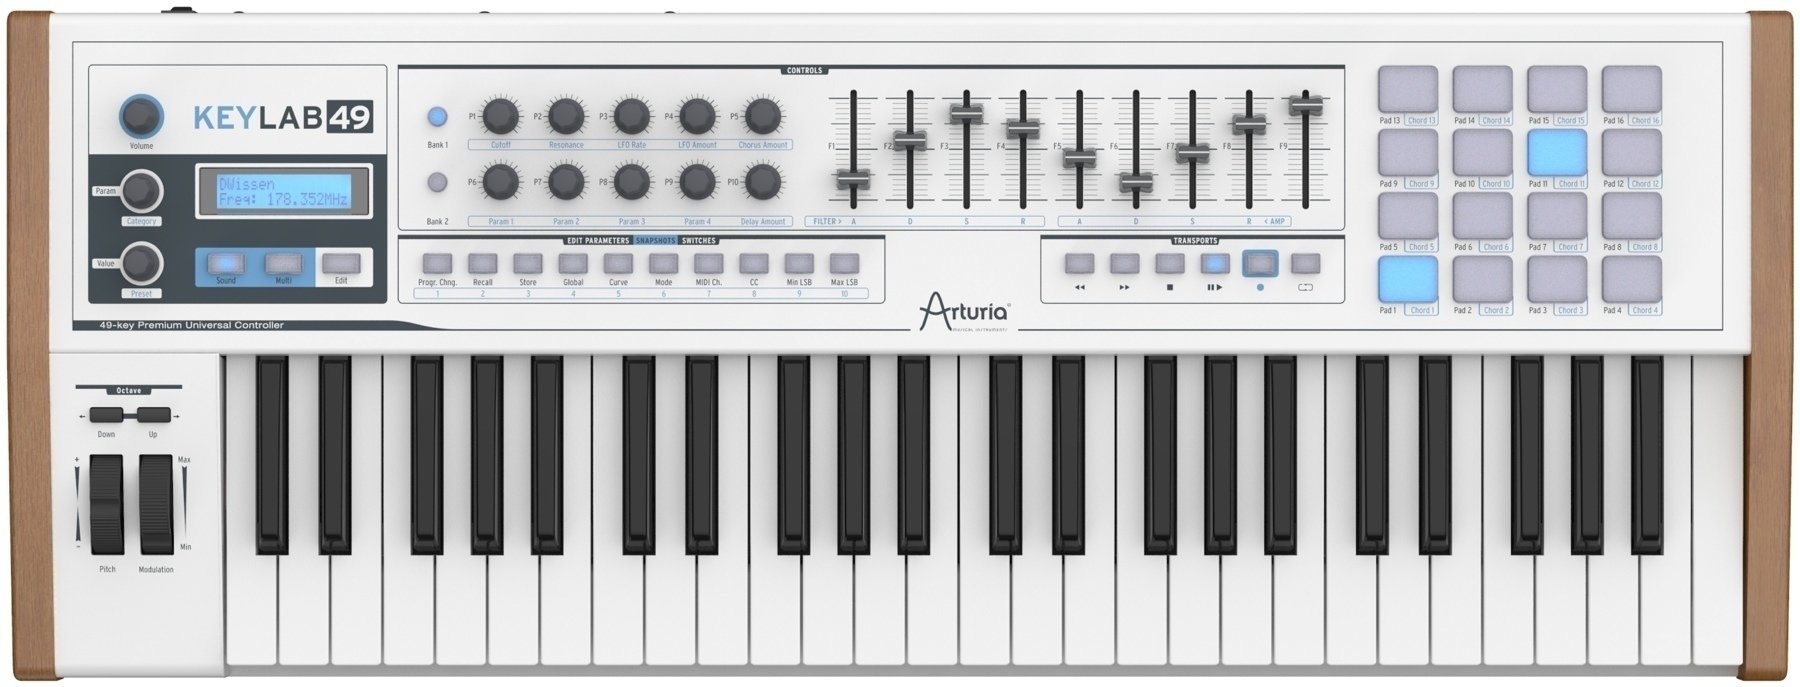 MIDI-Keyboard Arturia KeyLab 49